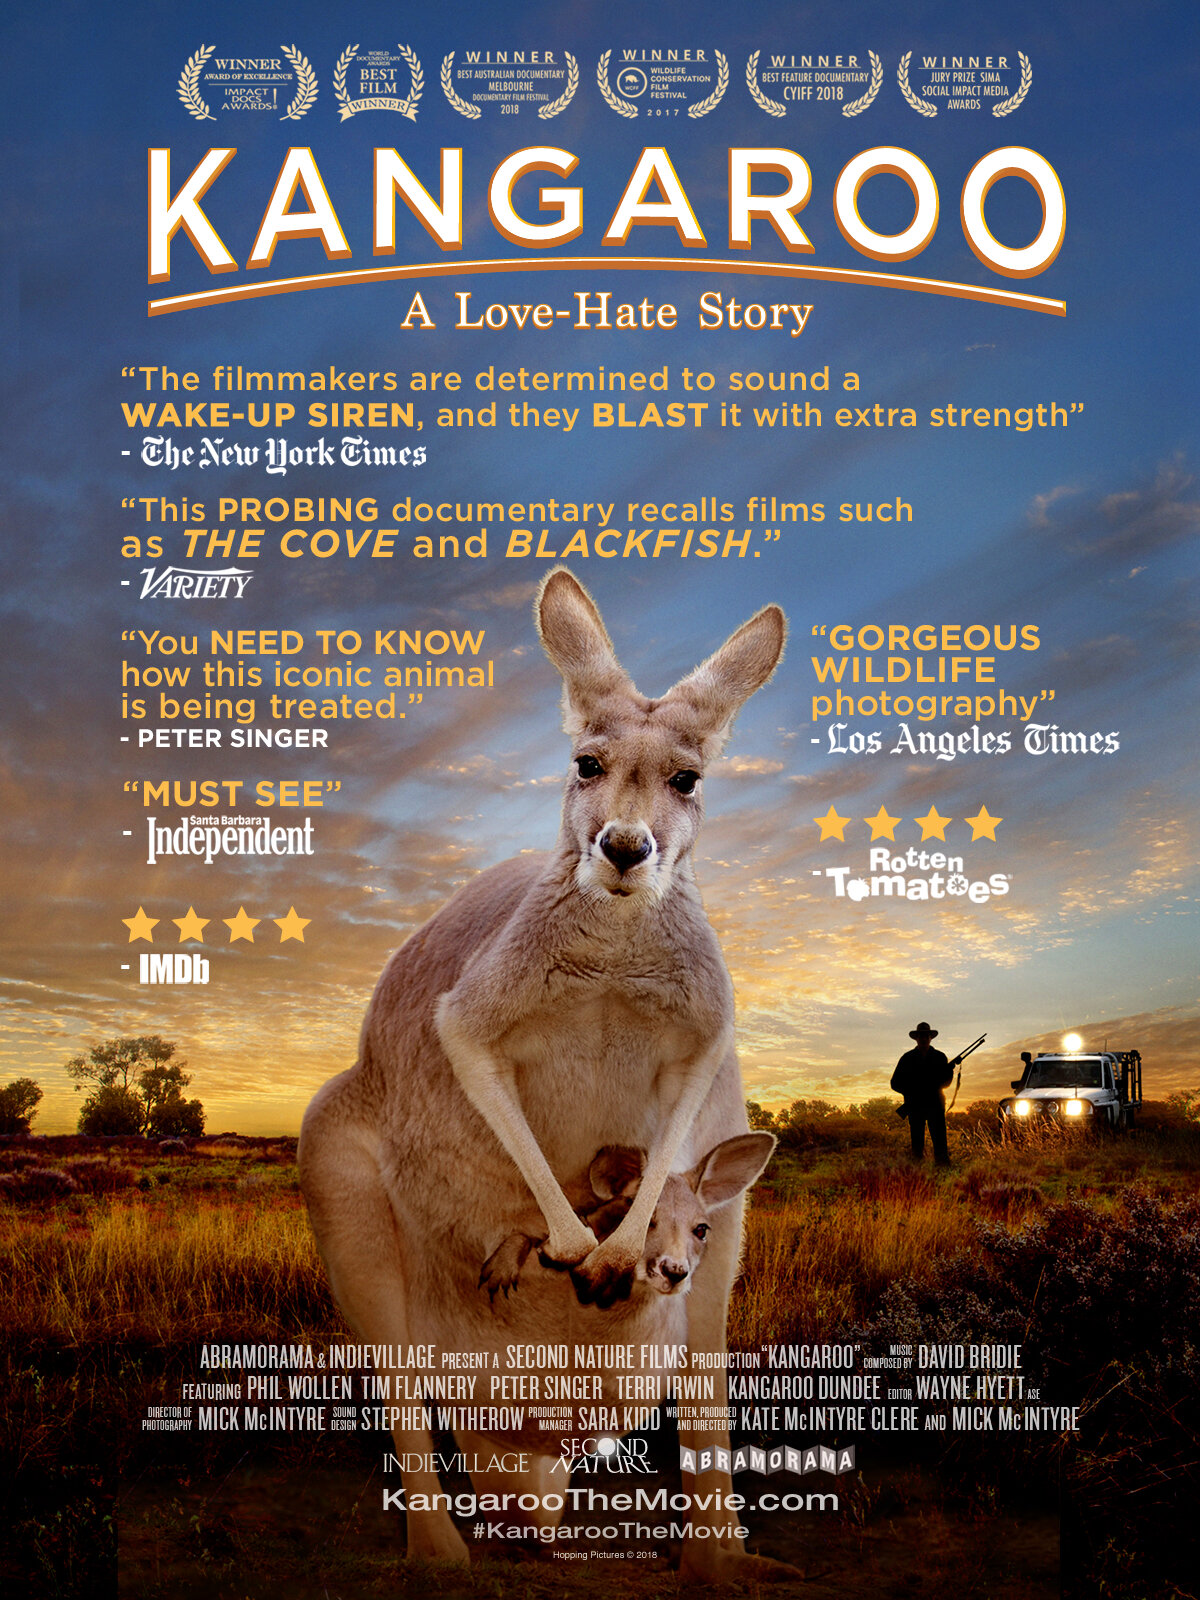 Kangaroo Poster 2020.jpg